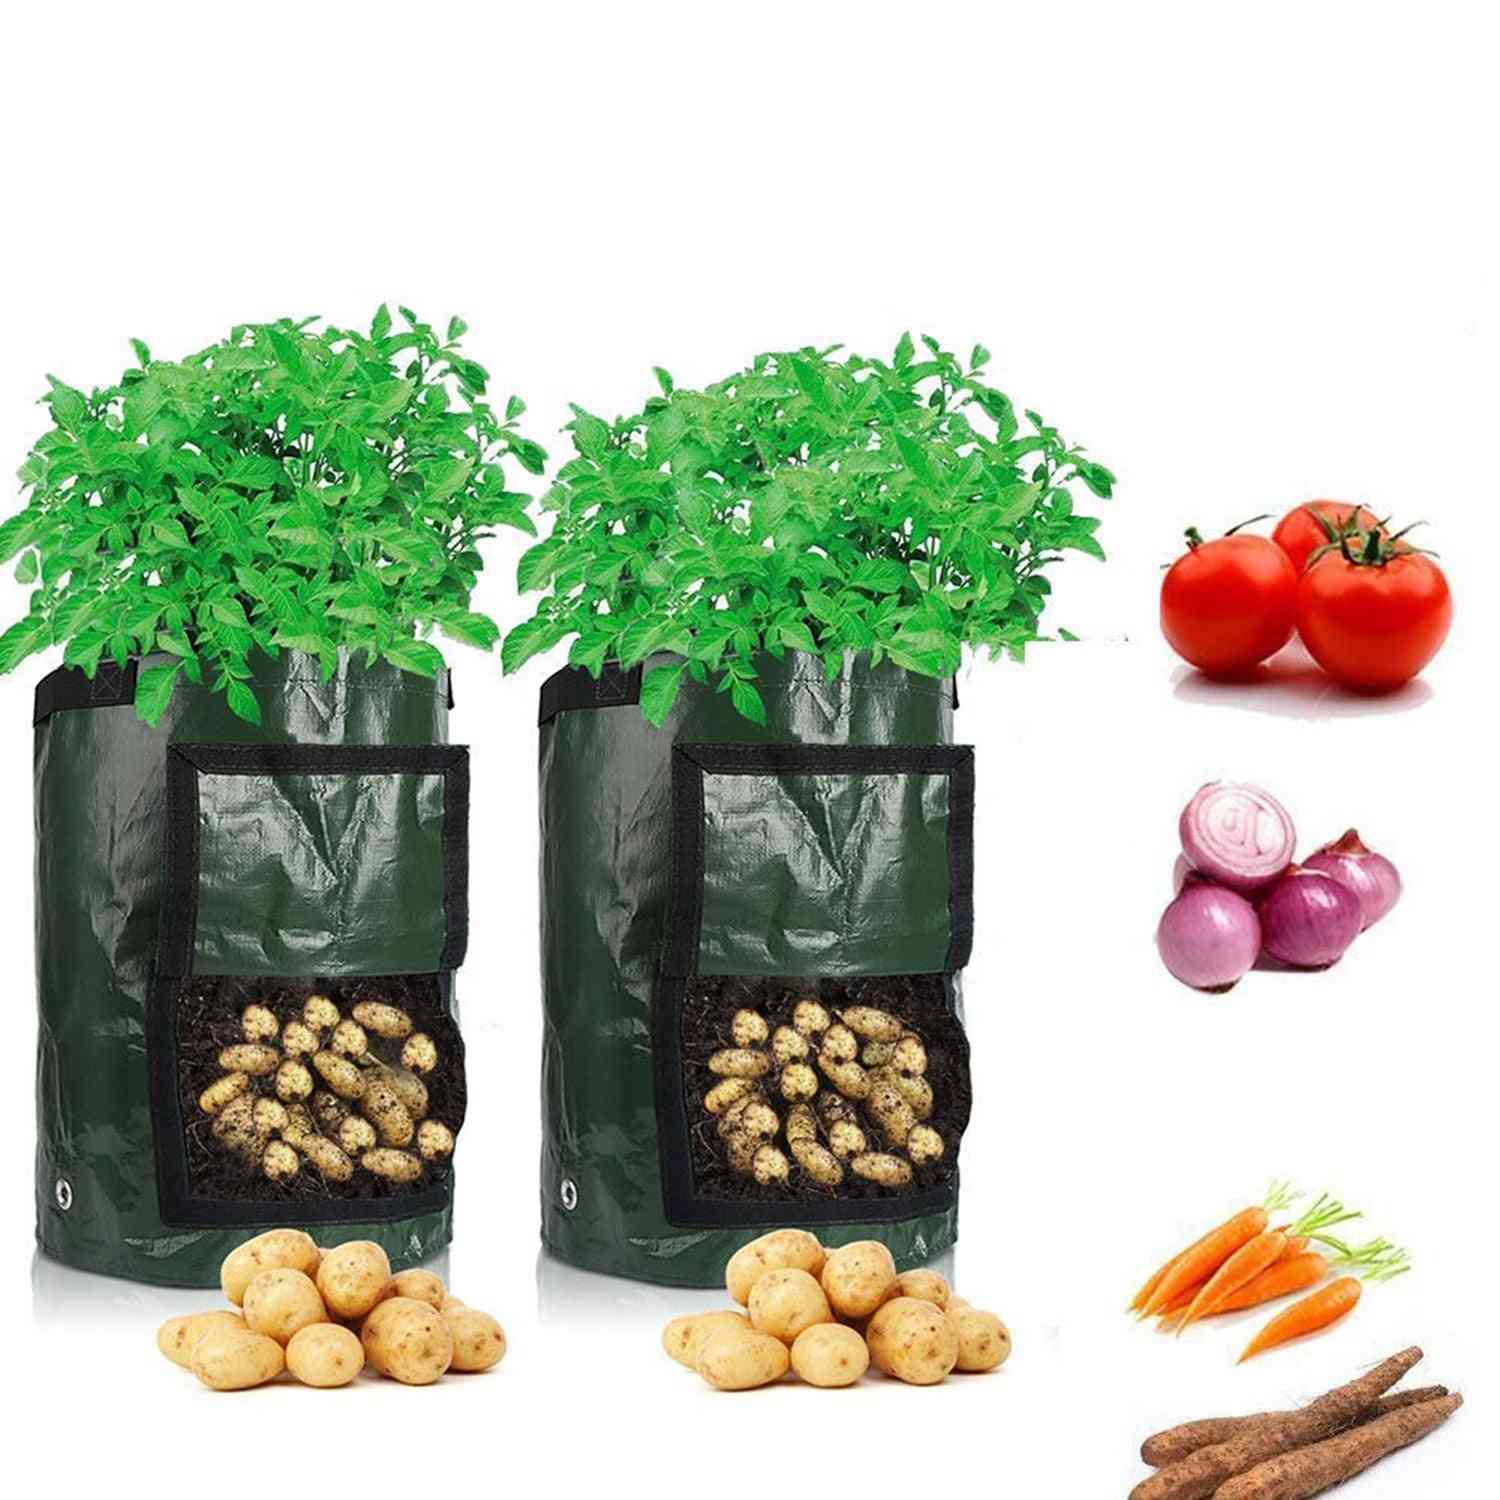 גידול תפוחי אדמה, שקיות בד ארוג לנטיעת ירקות גינה - ירוק 3 ליטר